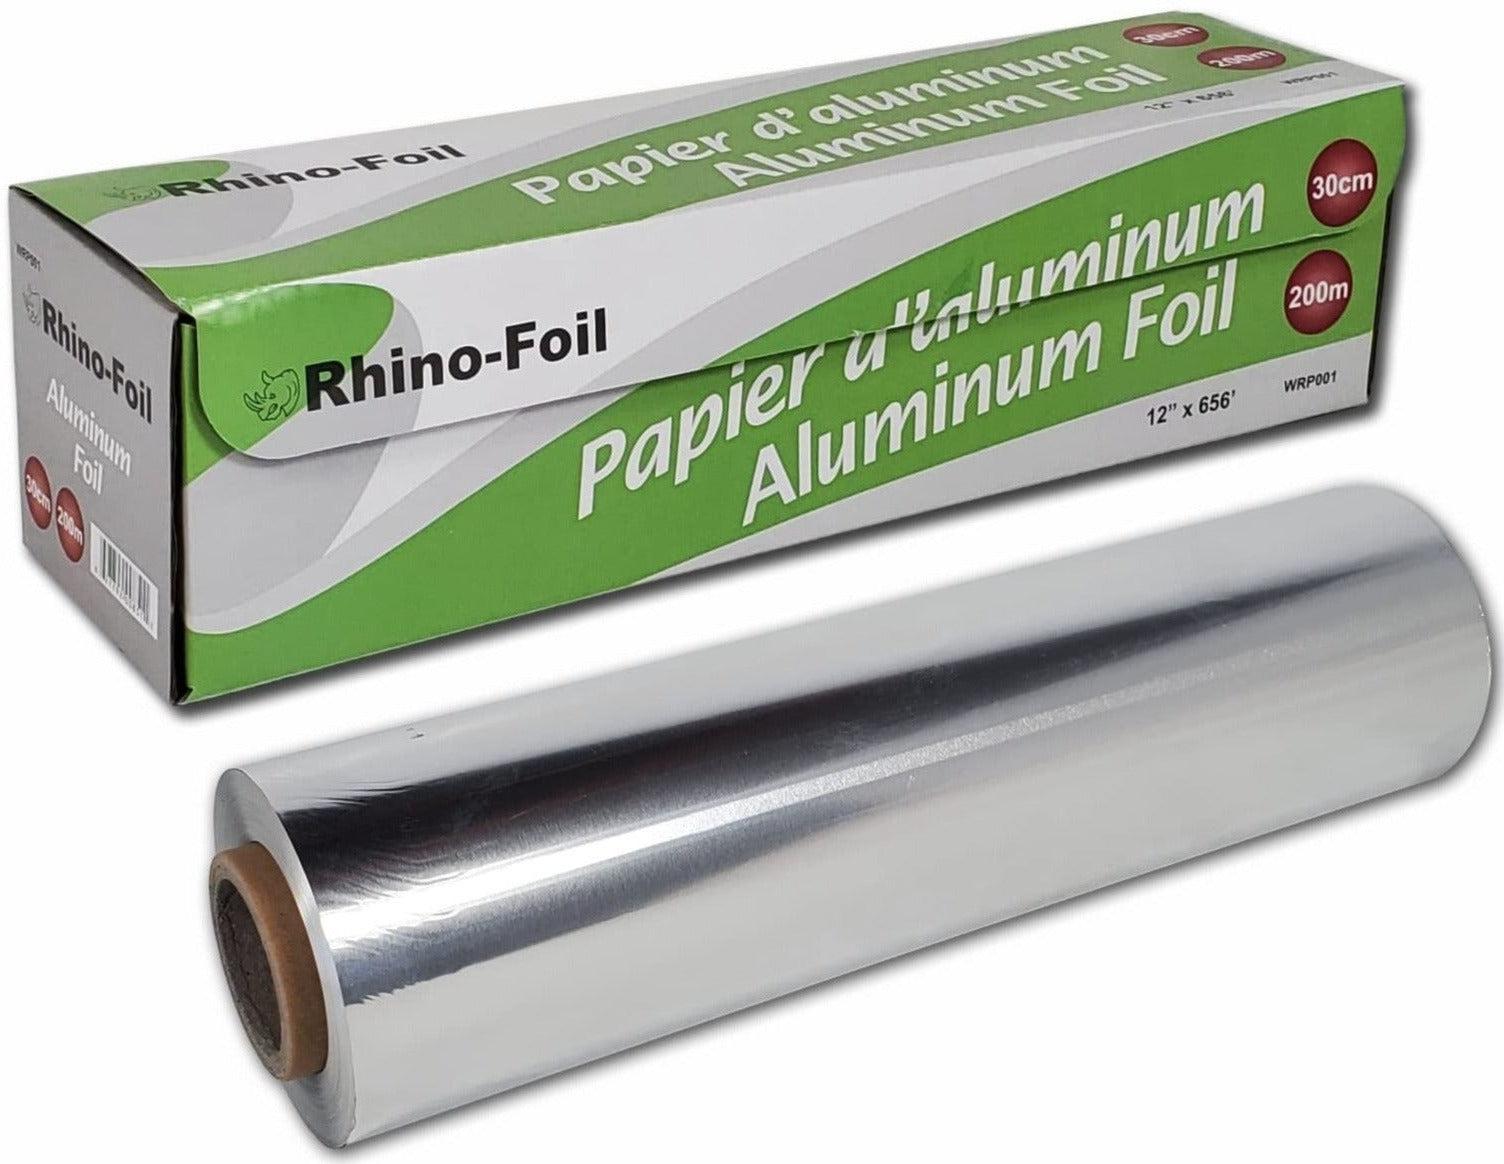 Papier aluminium - 200m*30cm